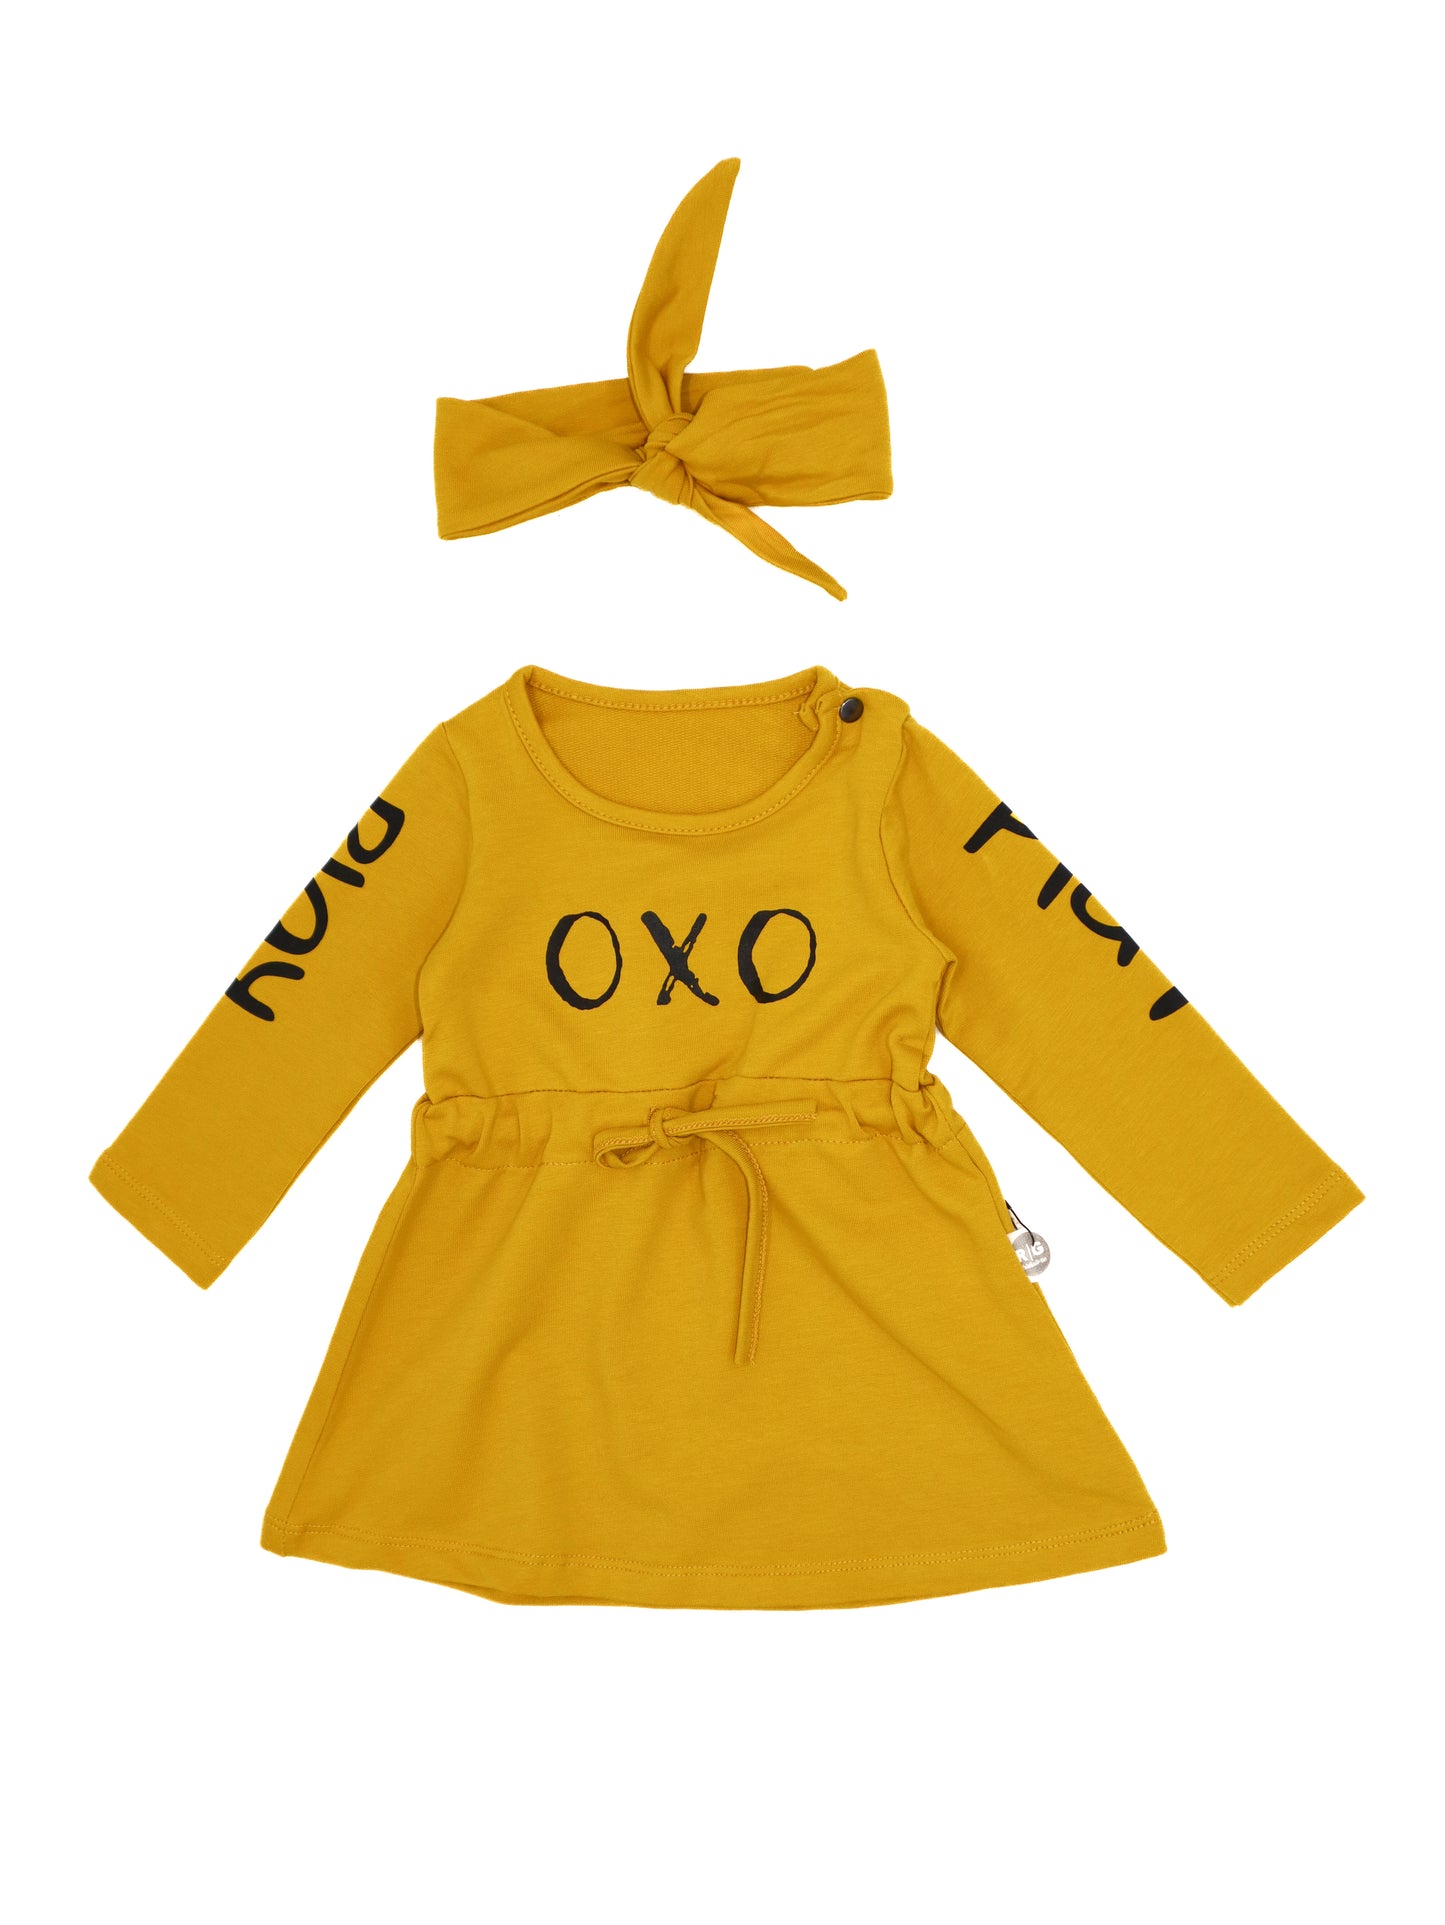 'OXO' Baskılı Bebek Elbisesi